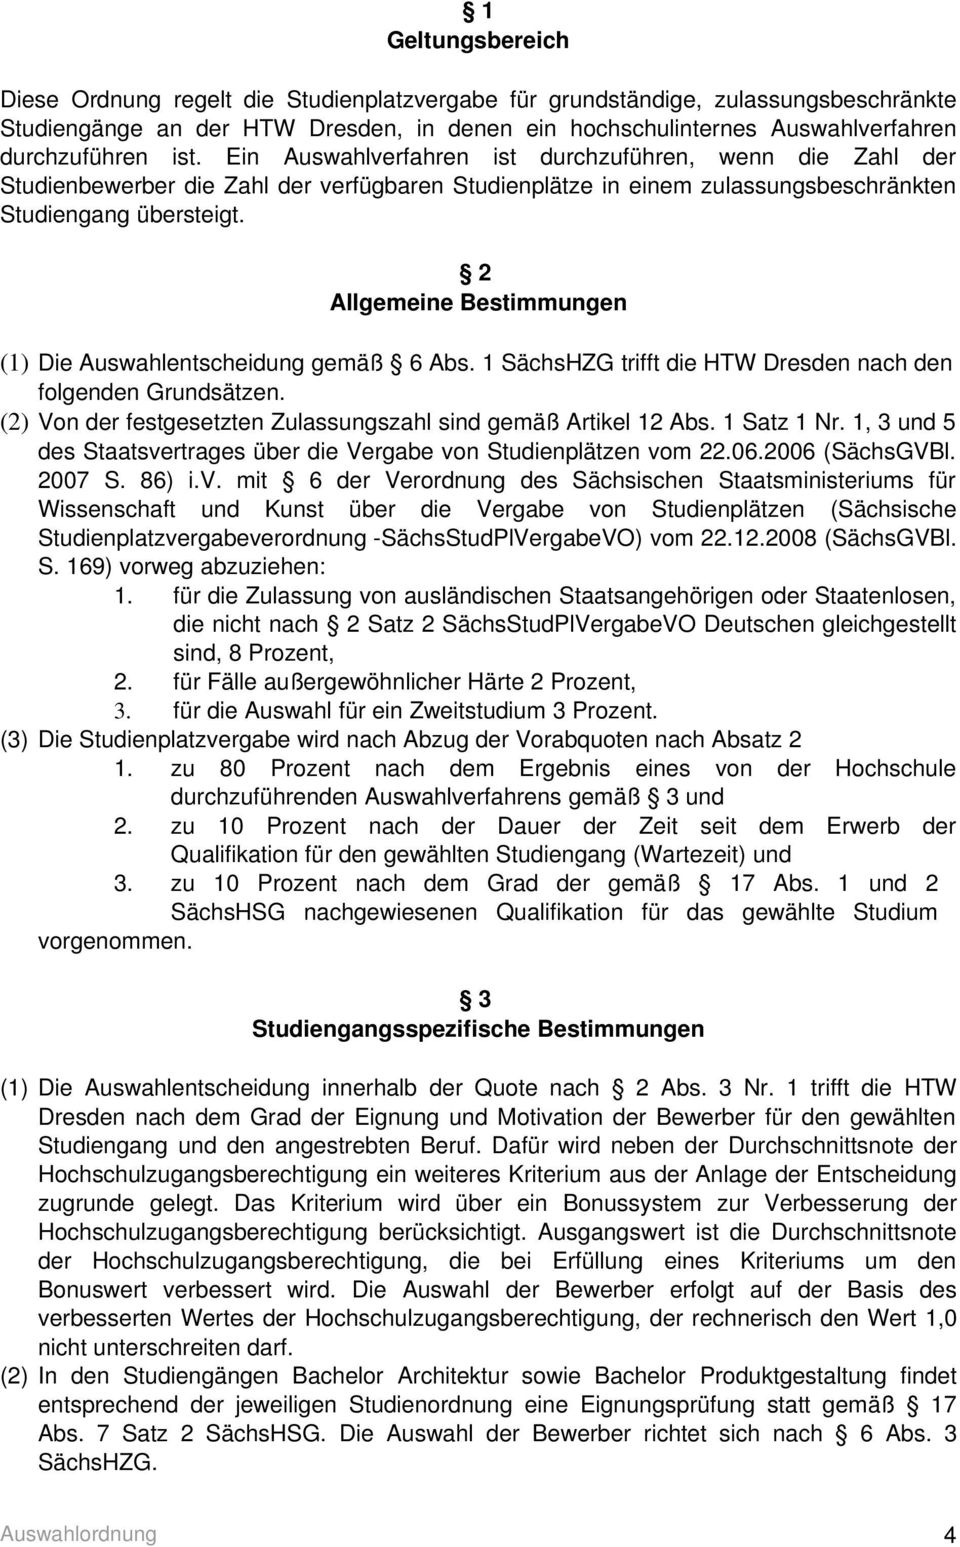 2 Allgemeine Bestimmungen (1) Die Auswahlentscheidung gemäß 6 Abs. 1 SächsHZG trifft die HTW Dresden nach den folgenden Grundsätzen. (2) Von der festgesetzten Zulassungszahl sind gemäß Artikel 12 Abs.